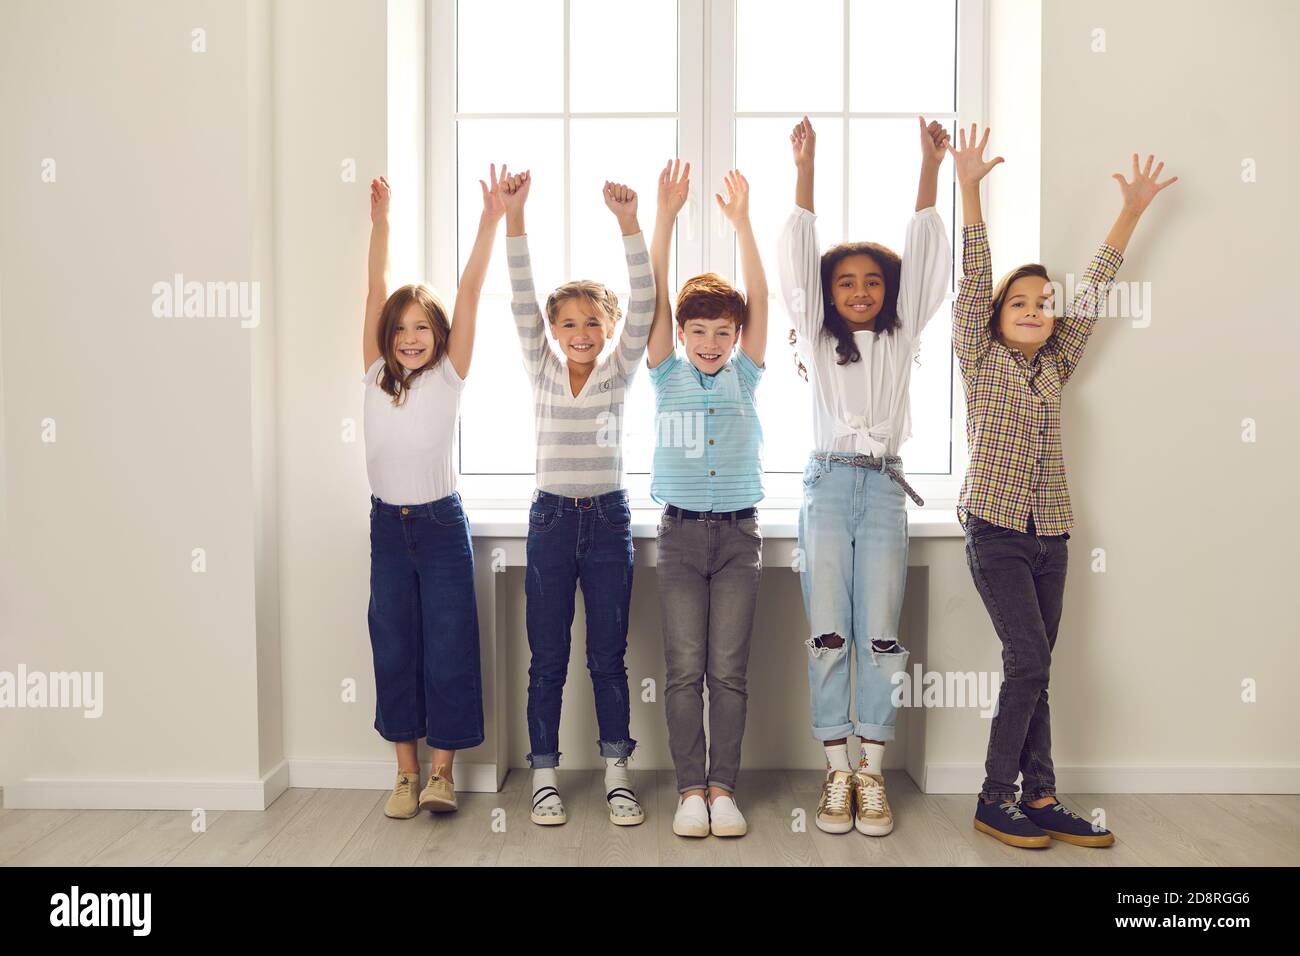 Gruppo di bambini diversi di compagni di classe si levano in piedi con le mani sollevate nel corridoio della scuola. Foto Stock